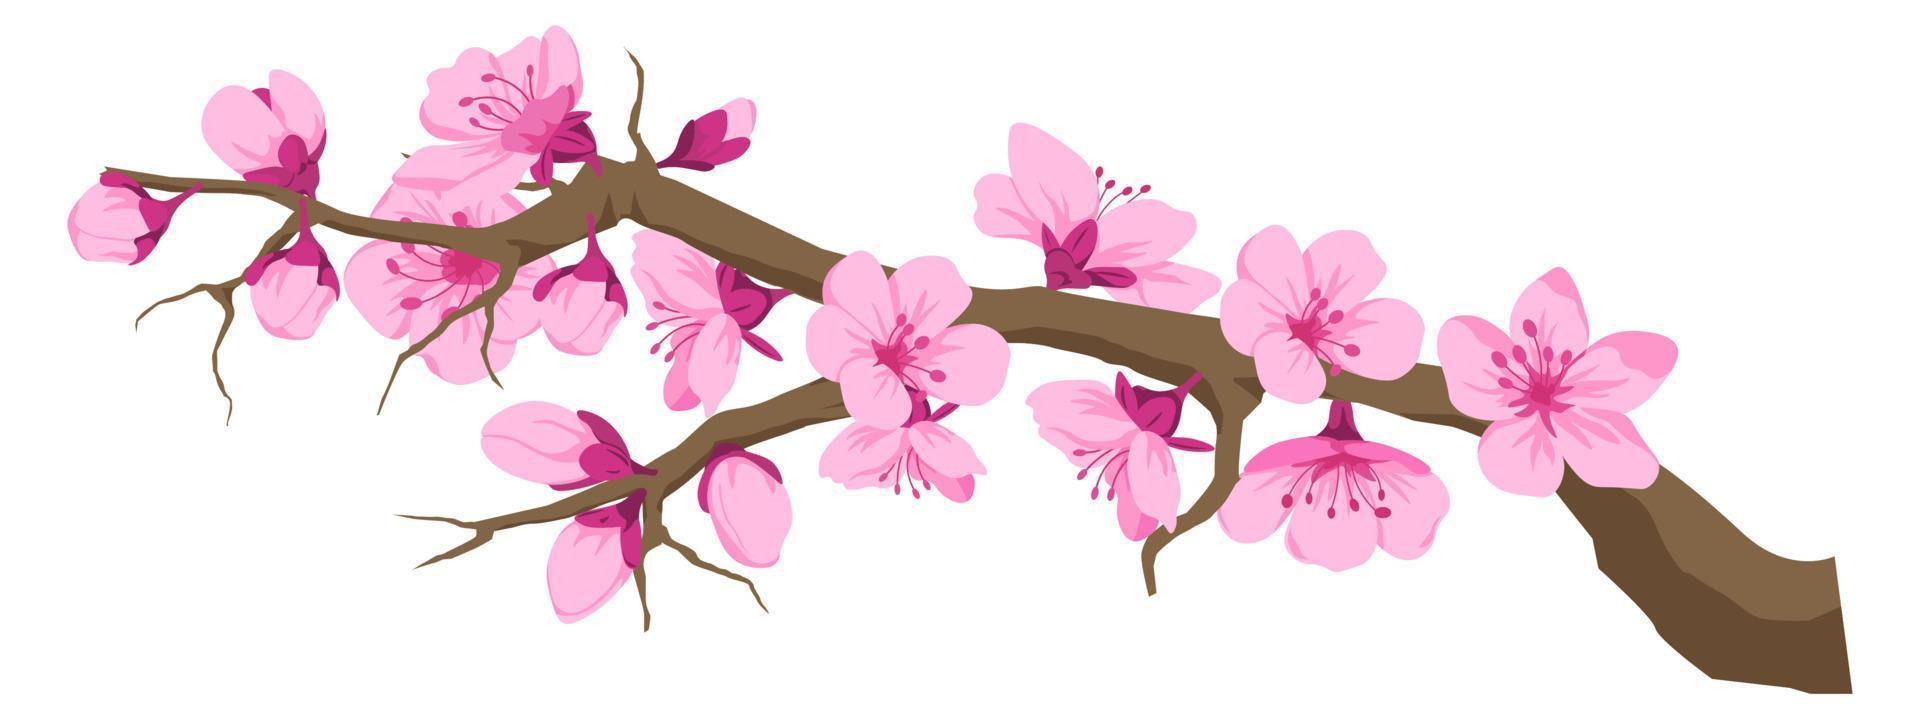 ramoscello con ciliegia fiore, sakura fiori su ramo vettore